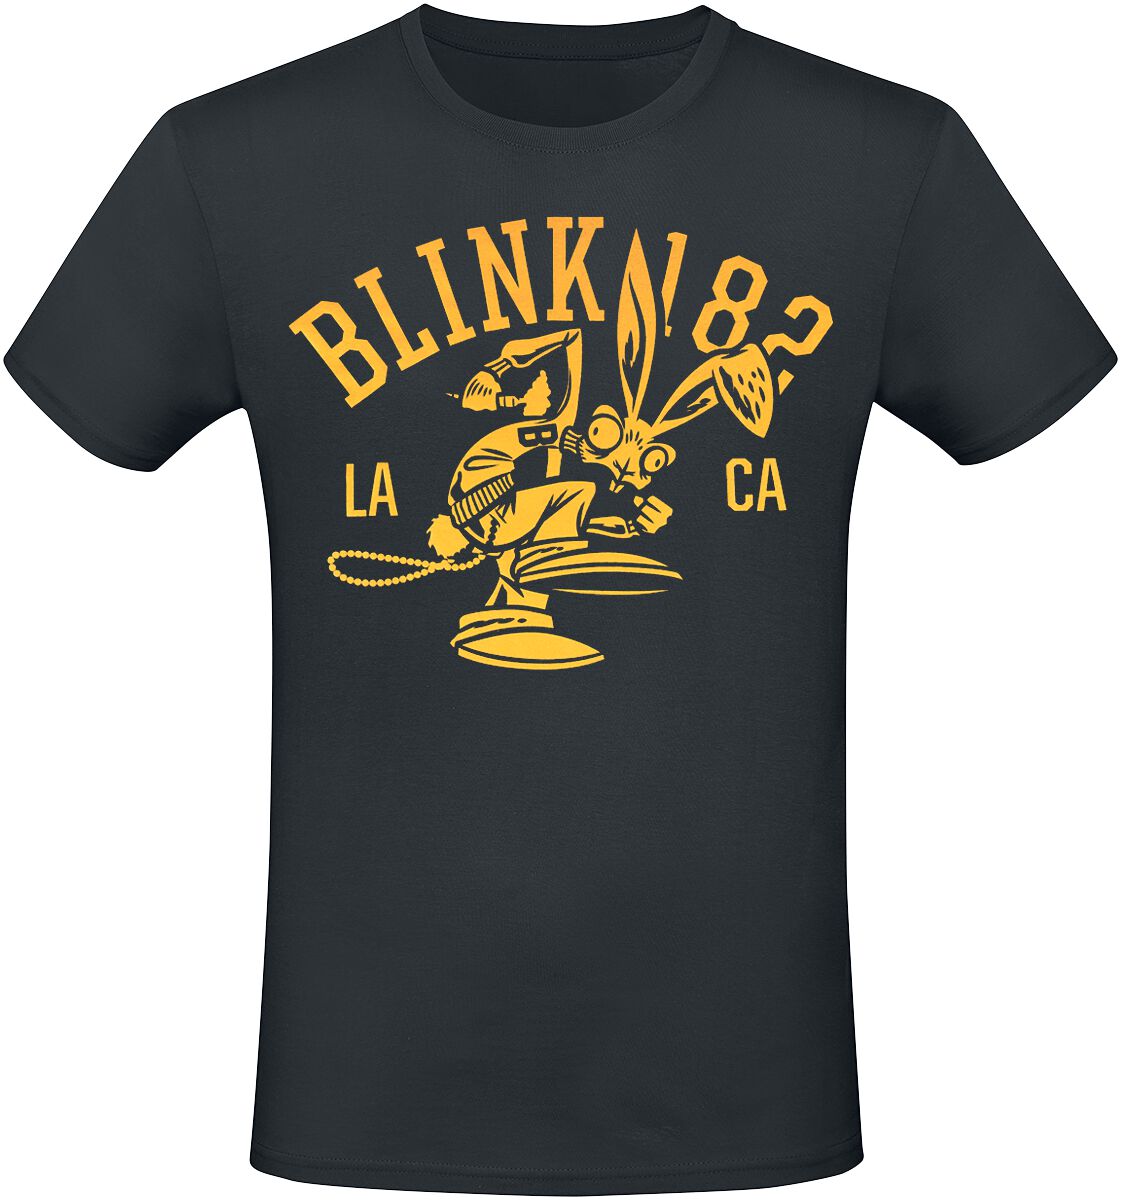 Blink-182 T-Shirt - Mascot - S bis 3XL - für Männer - Größe M - schwarz  - Lizenziertes Merchandise!